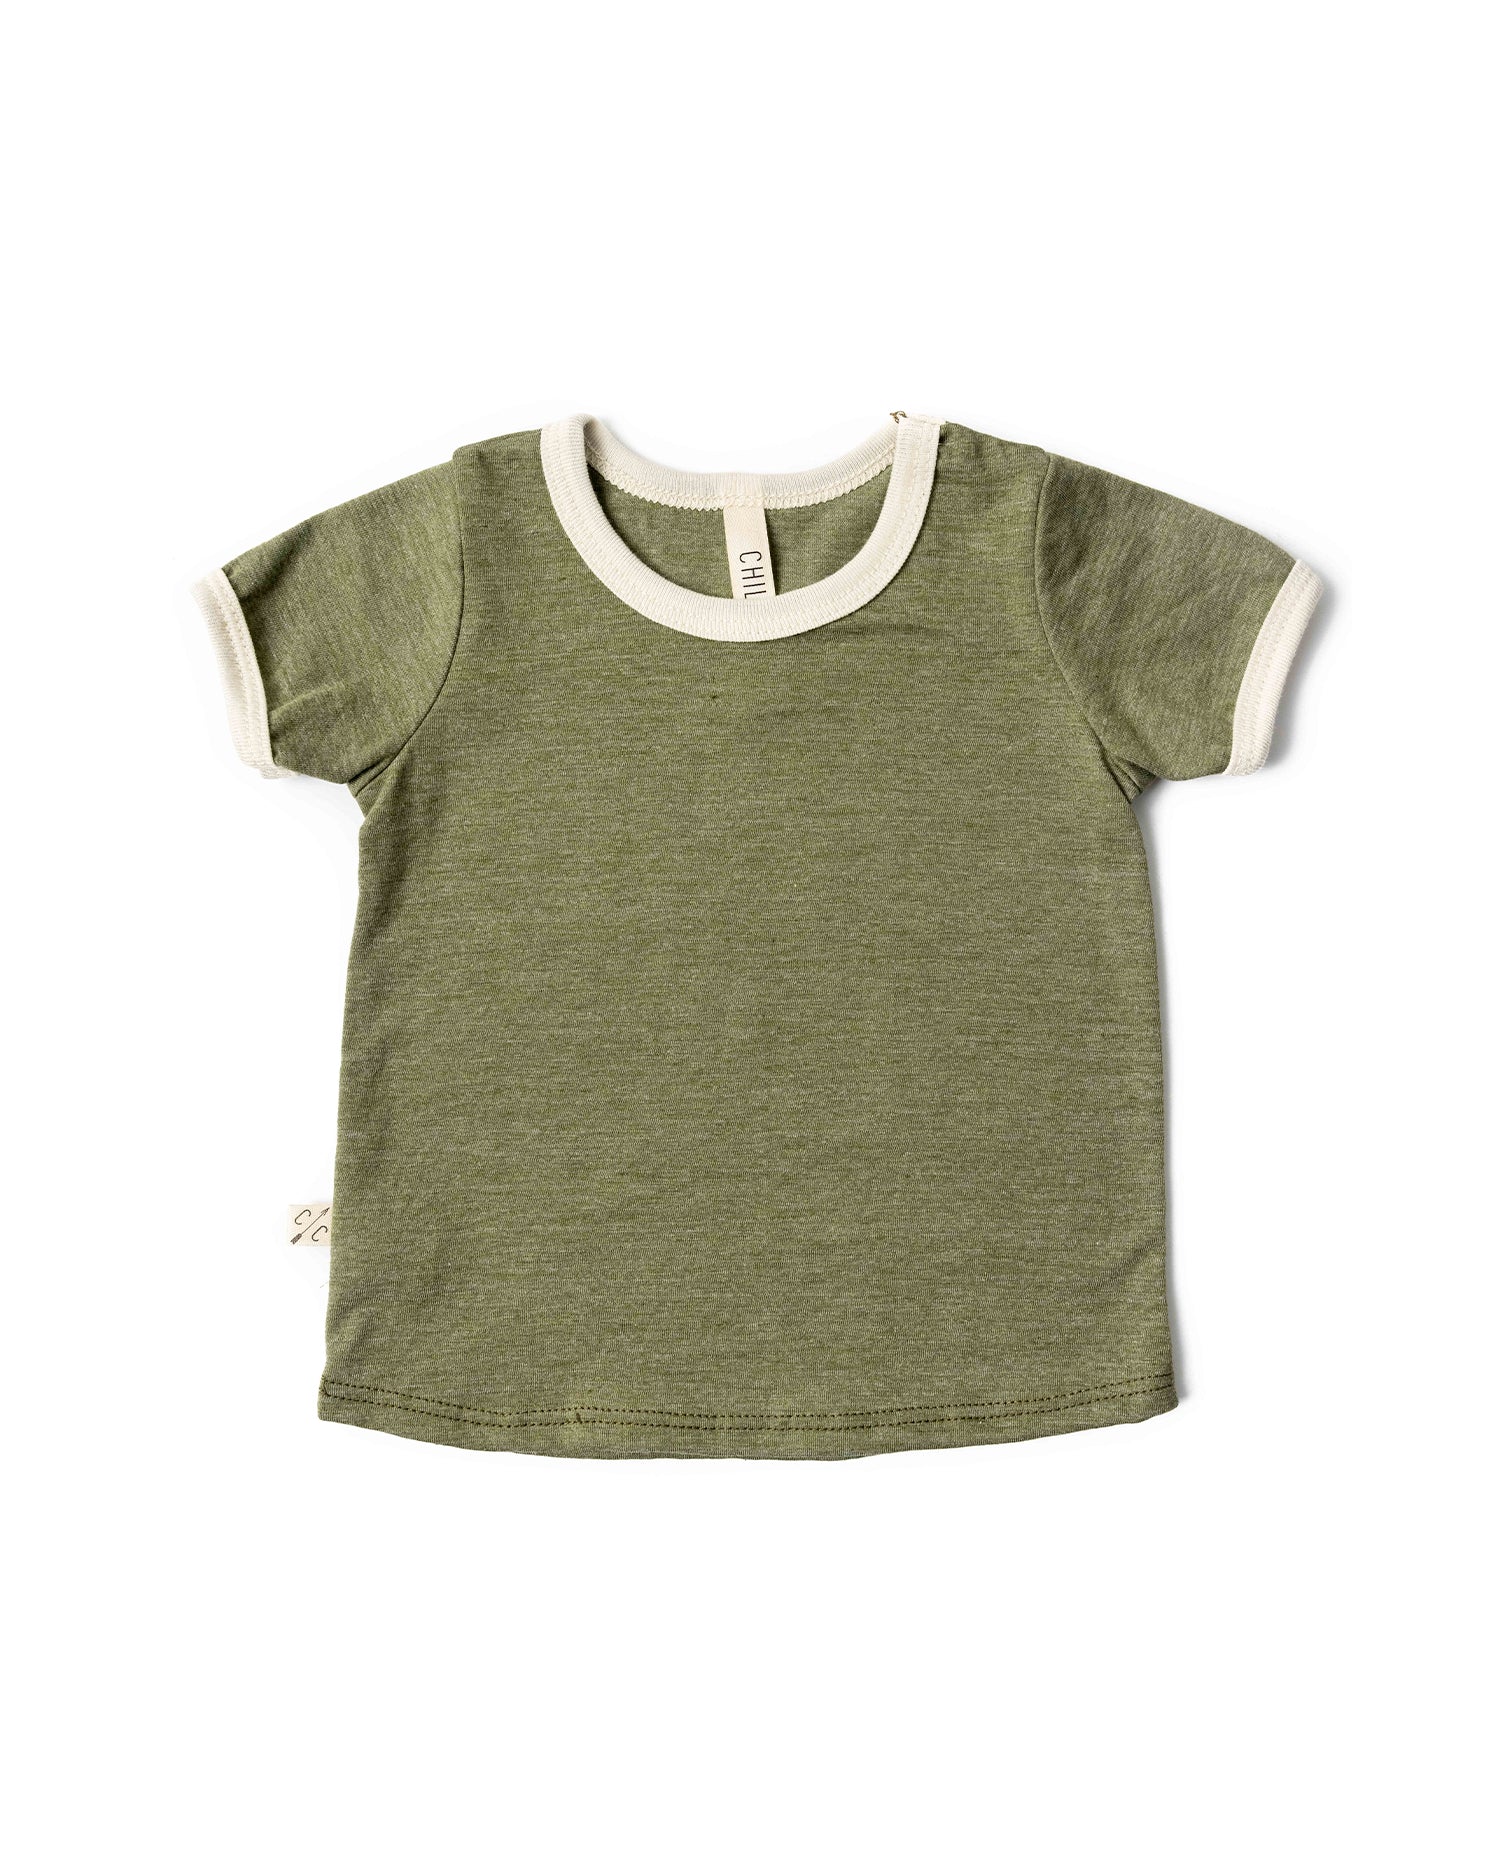 ringer tee - khaki green – Childhoods Clothing